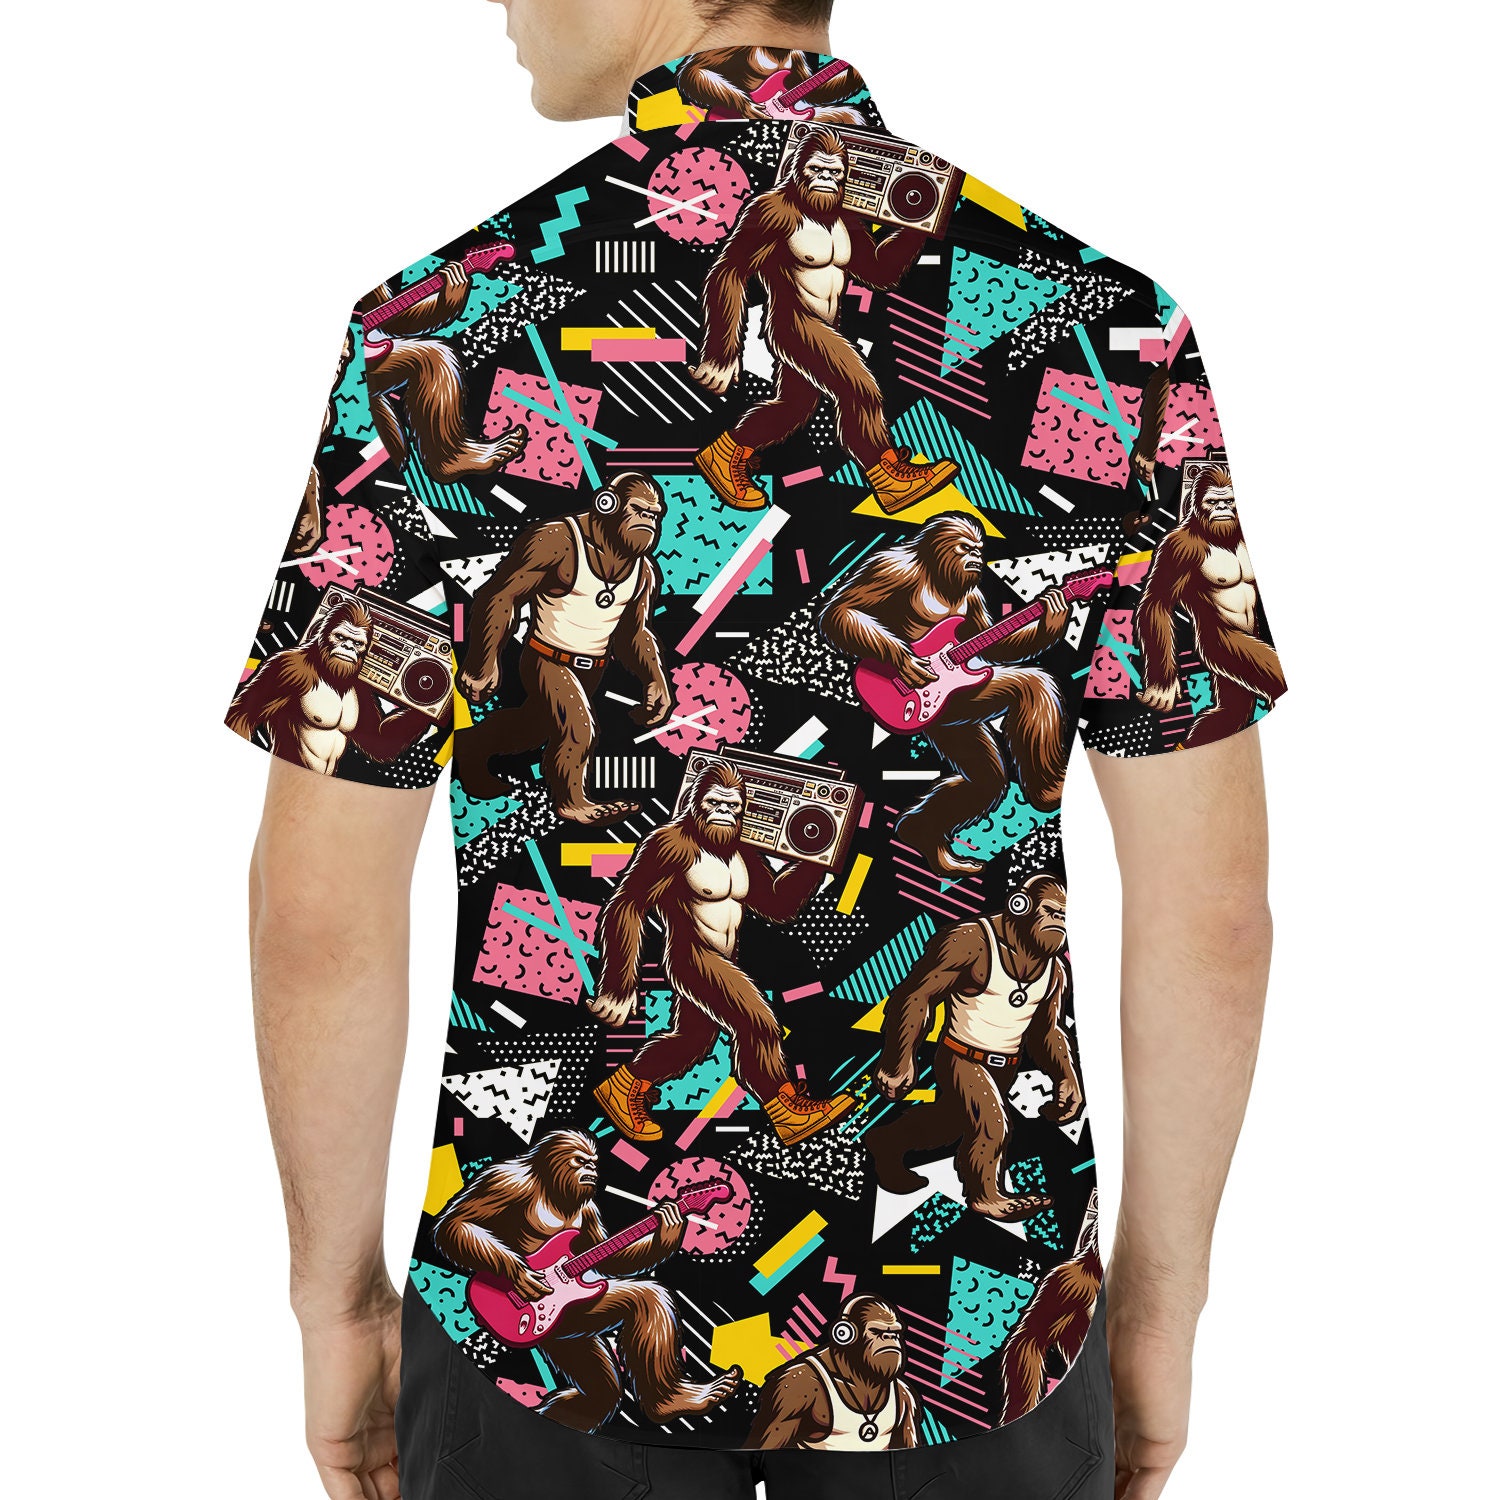 Retro Bigfoot Hawaiian Shirts for Men Women